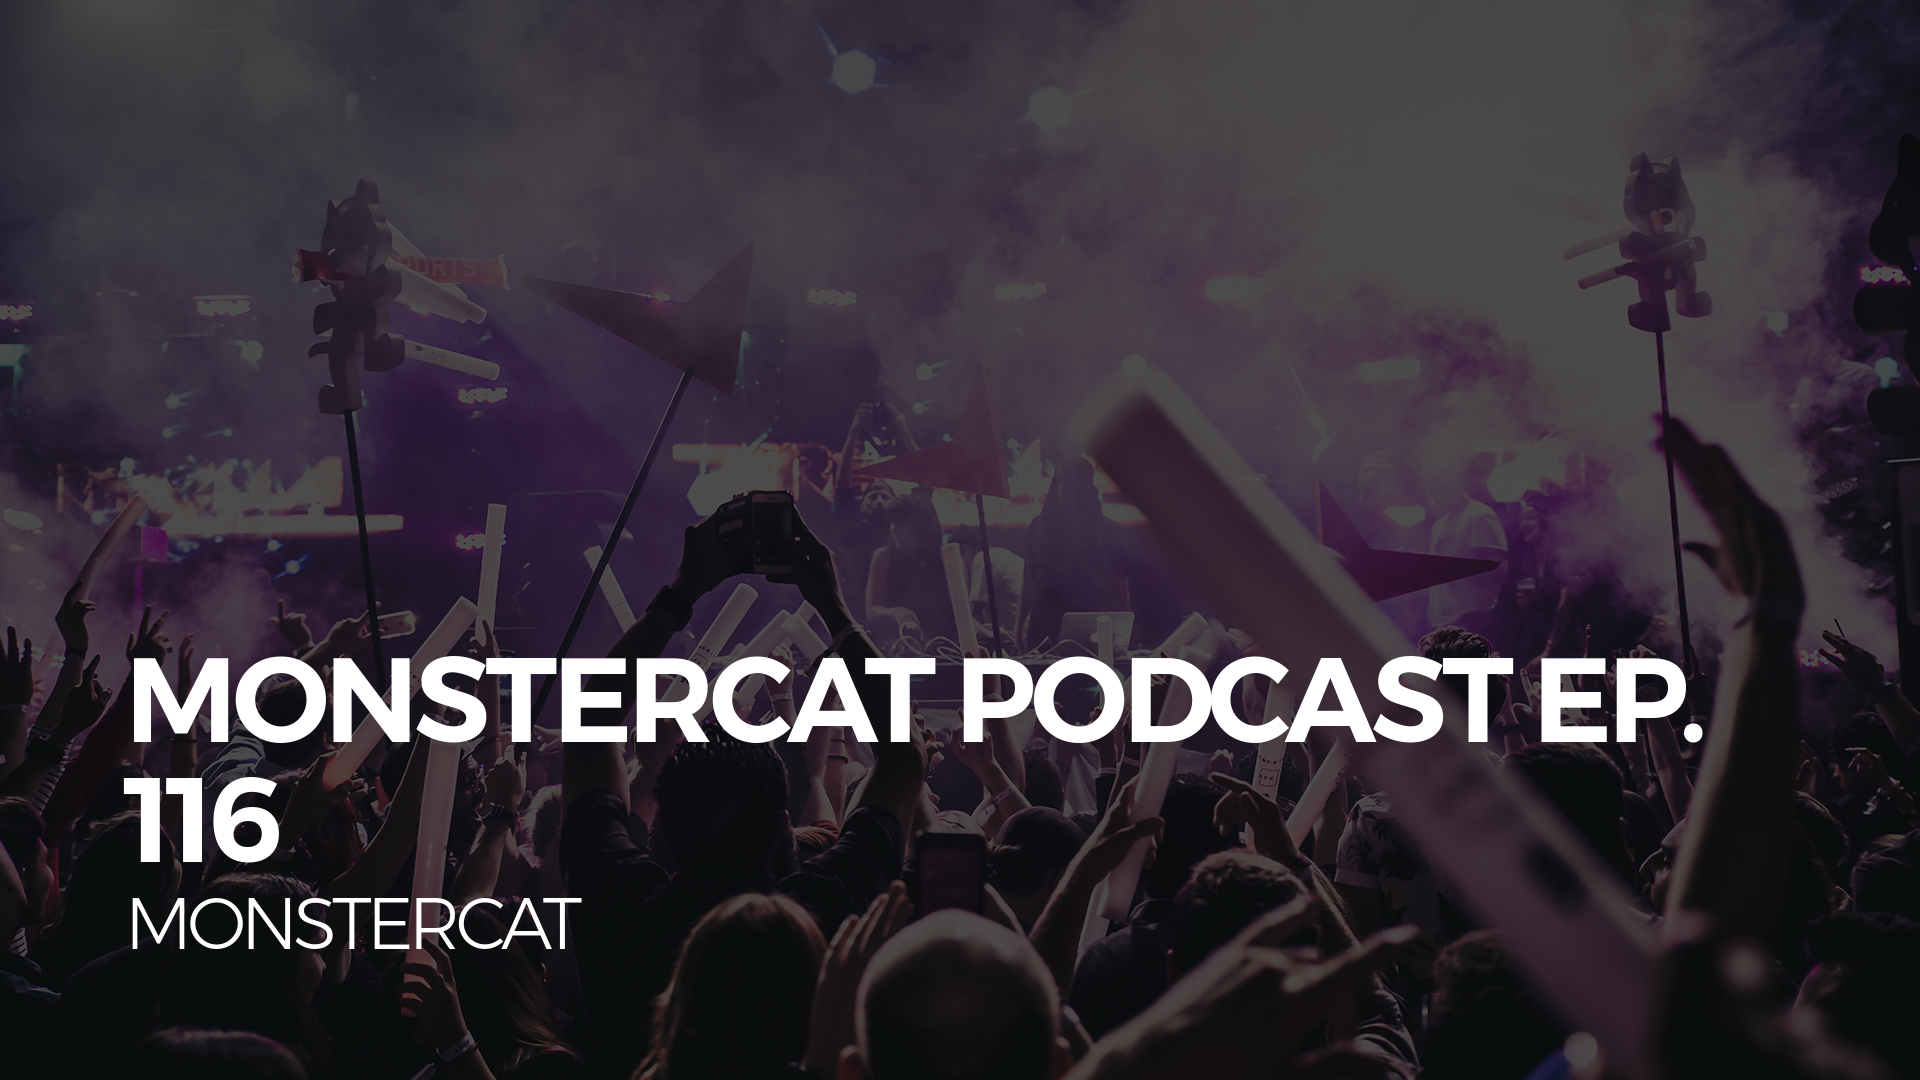 Monstercat Podcast Ep. 116